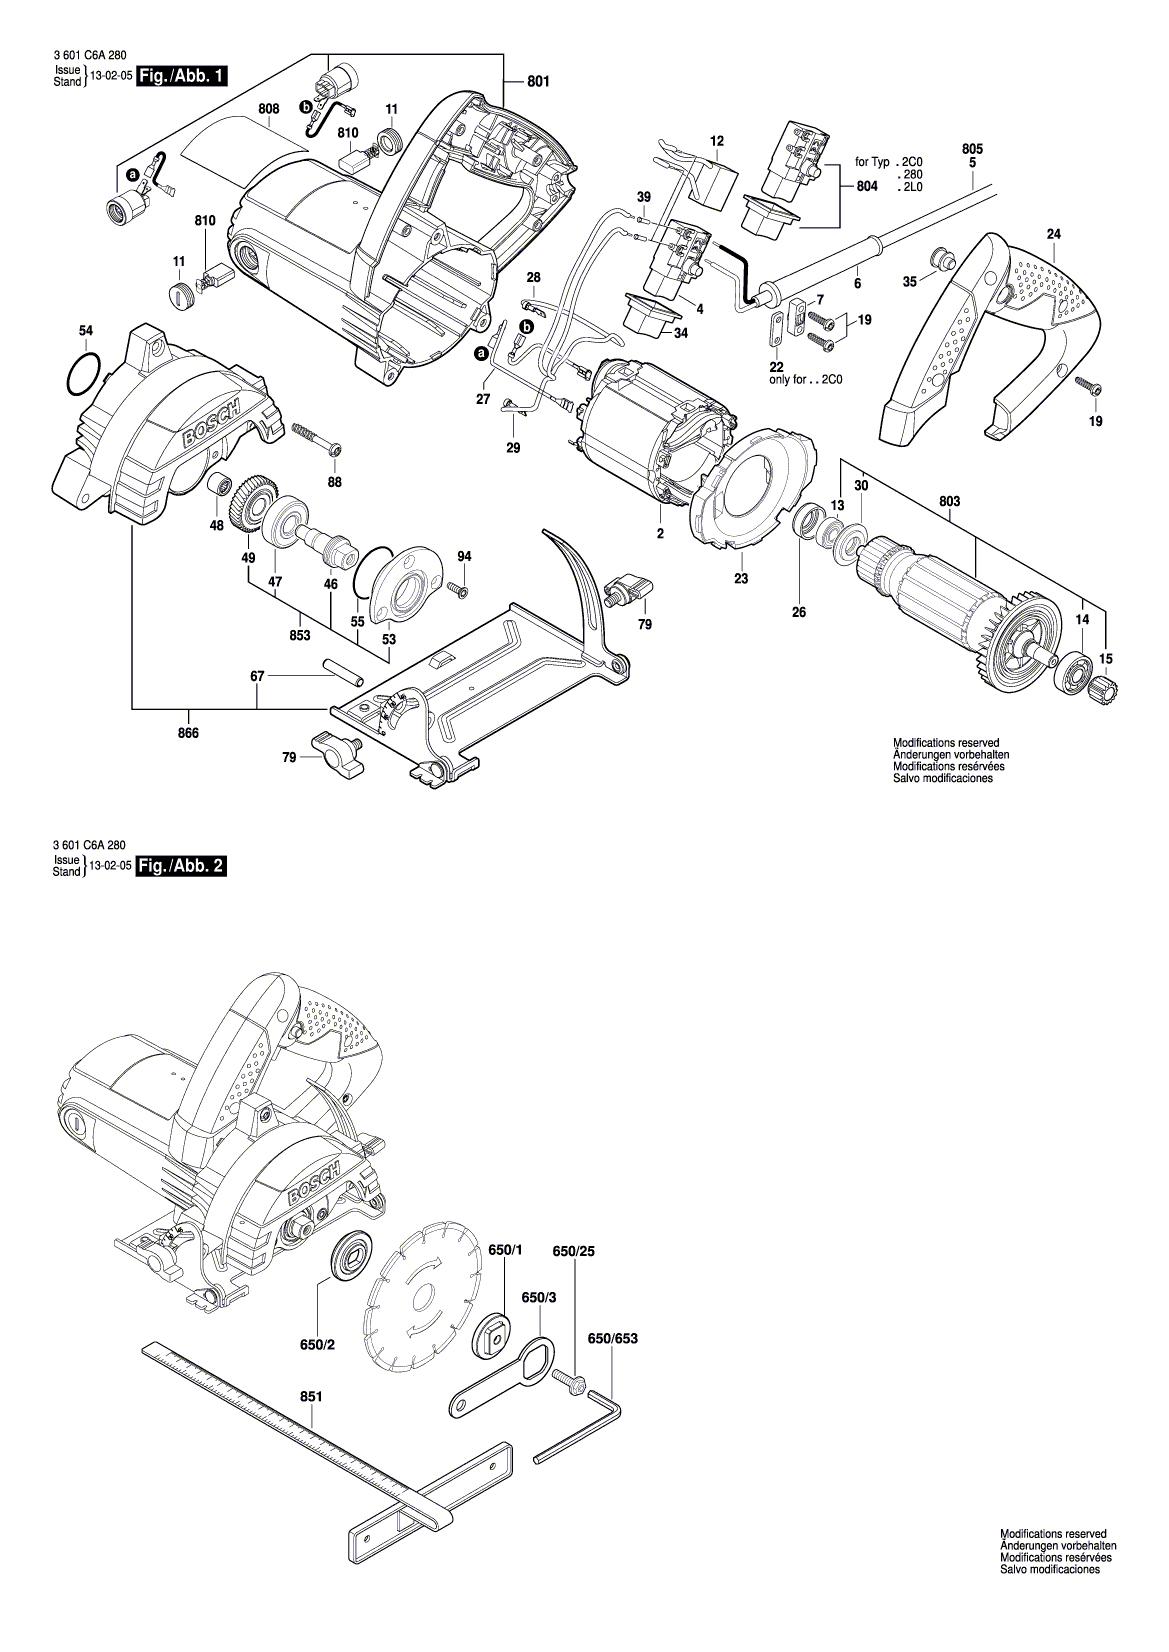 Схема на Пила Bosch GDM 13-34 (3601C6A280)